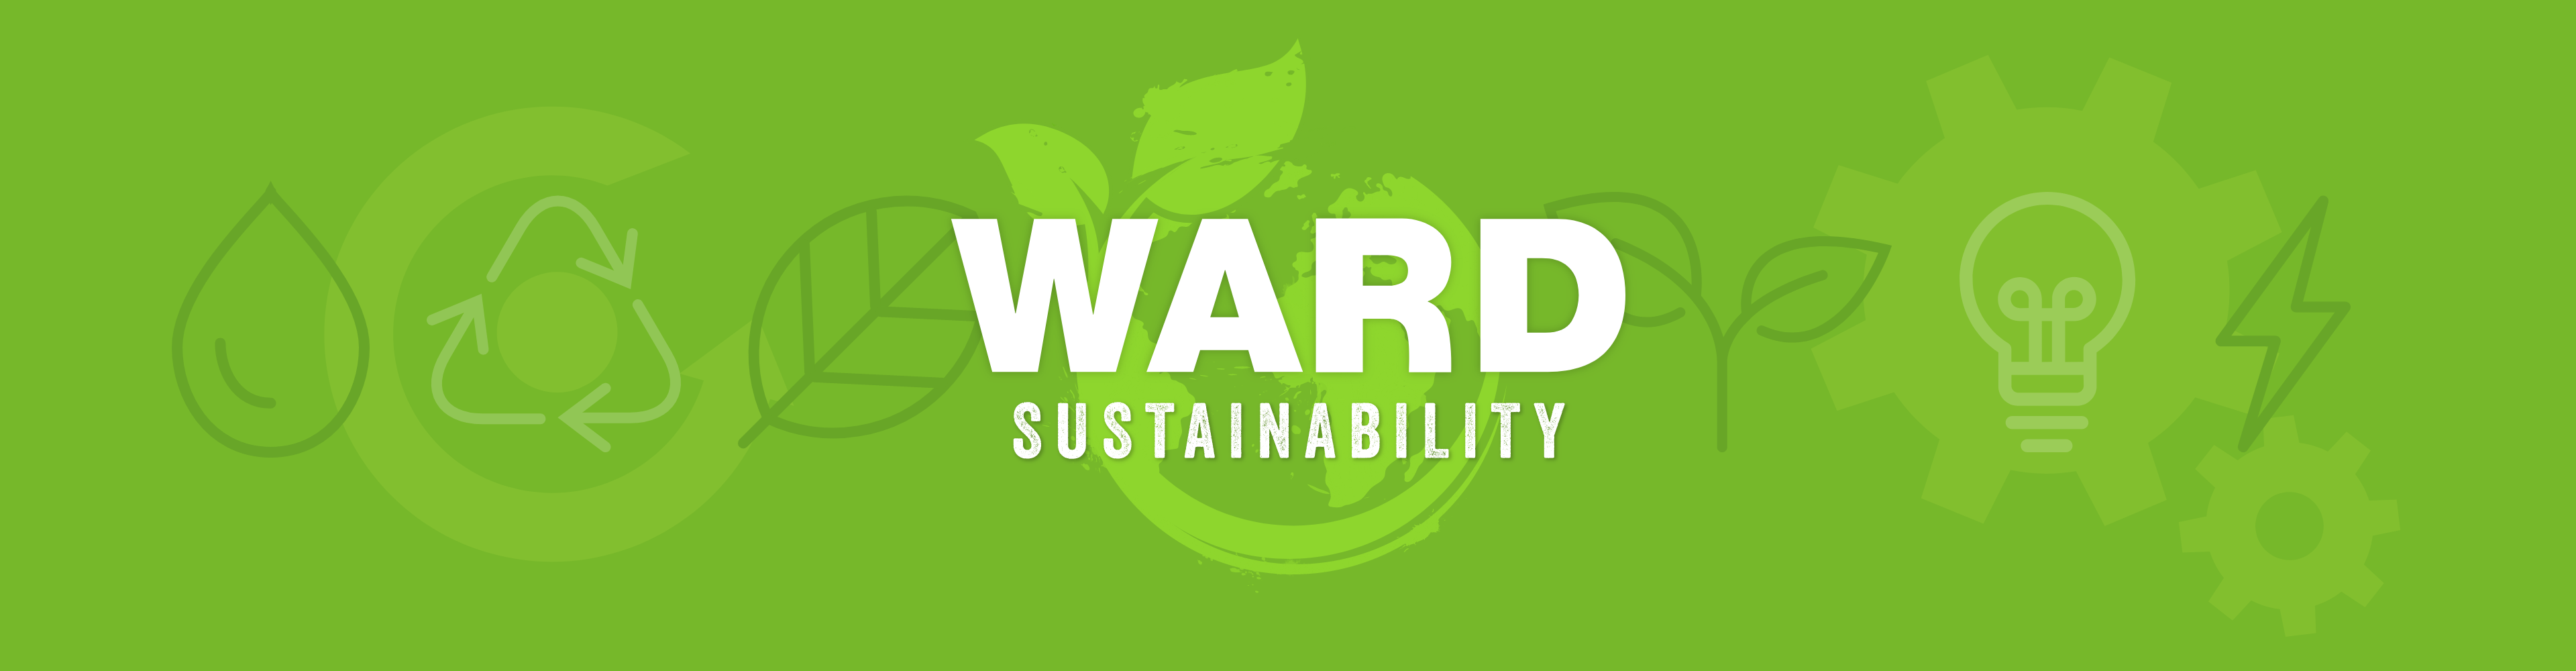 ward sustainability